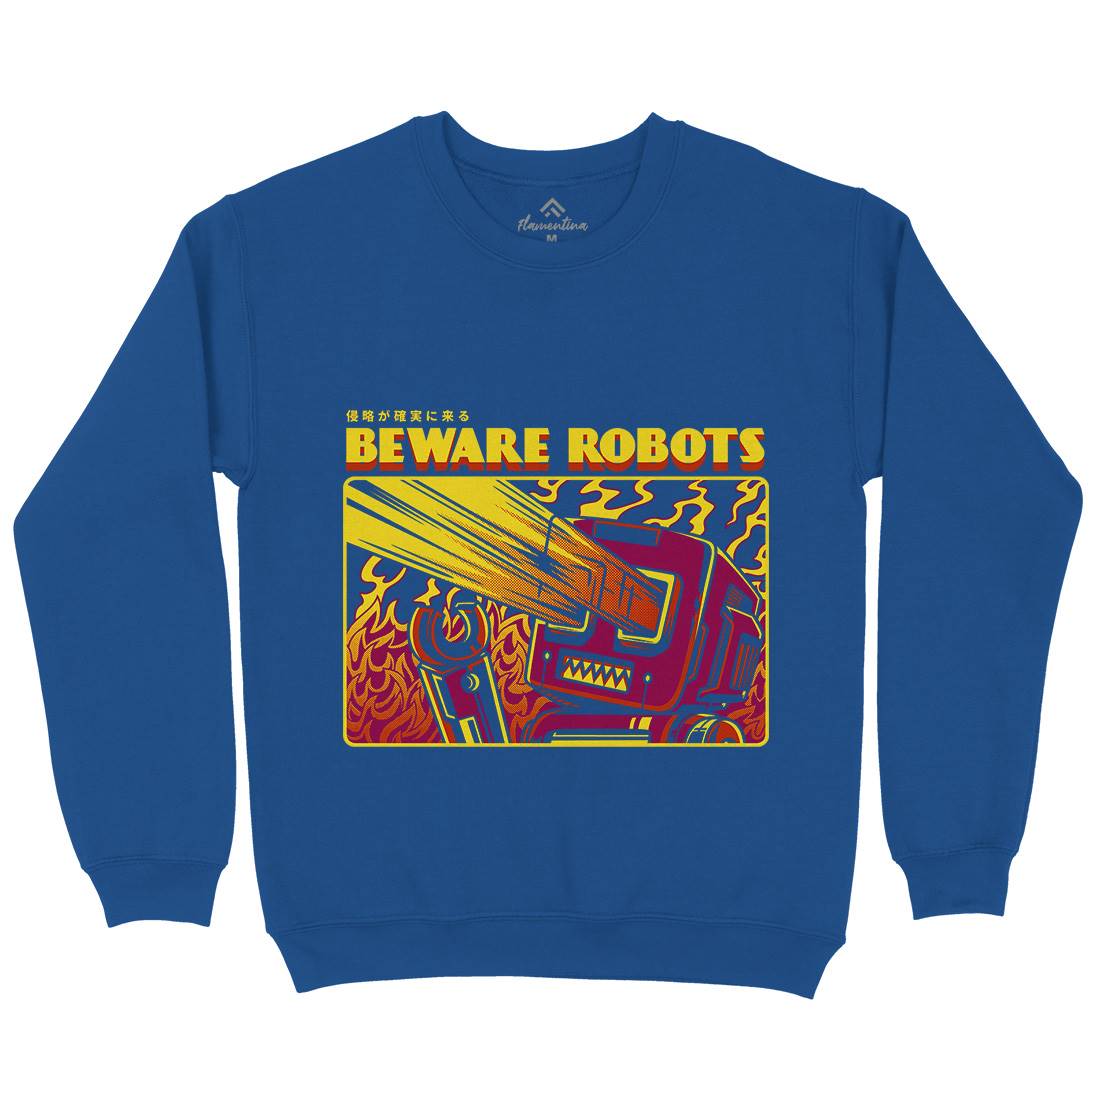 Beware Robots Kids Crew Neck Sweatshirt Space D714